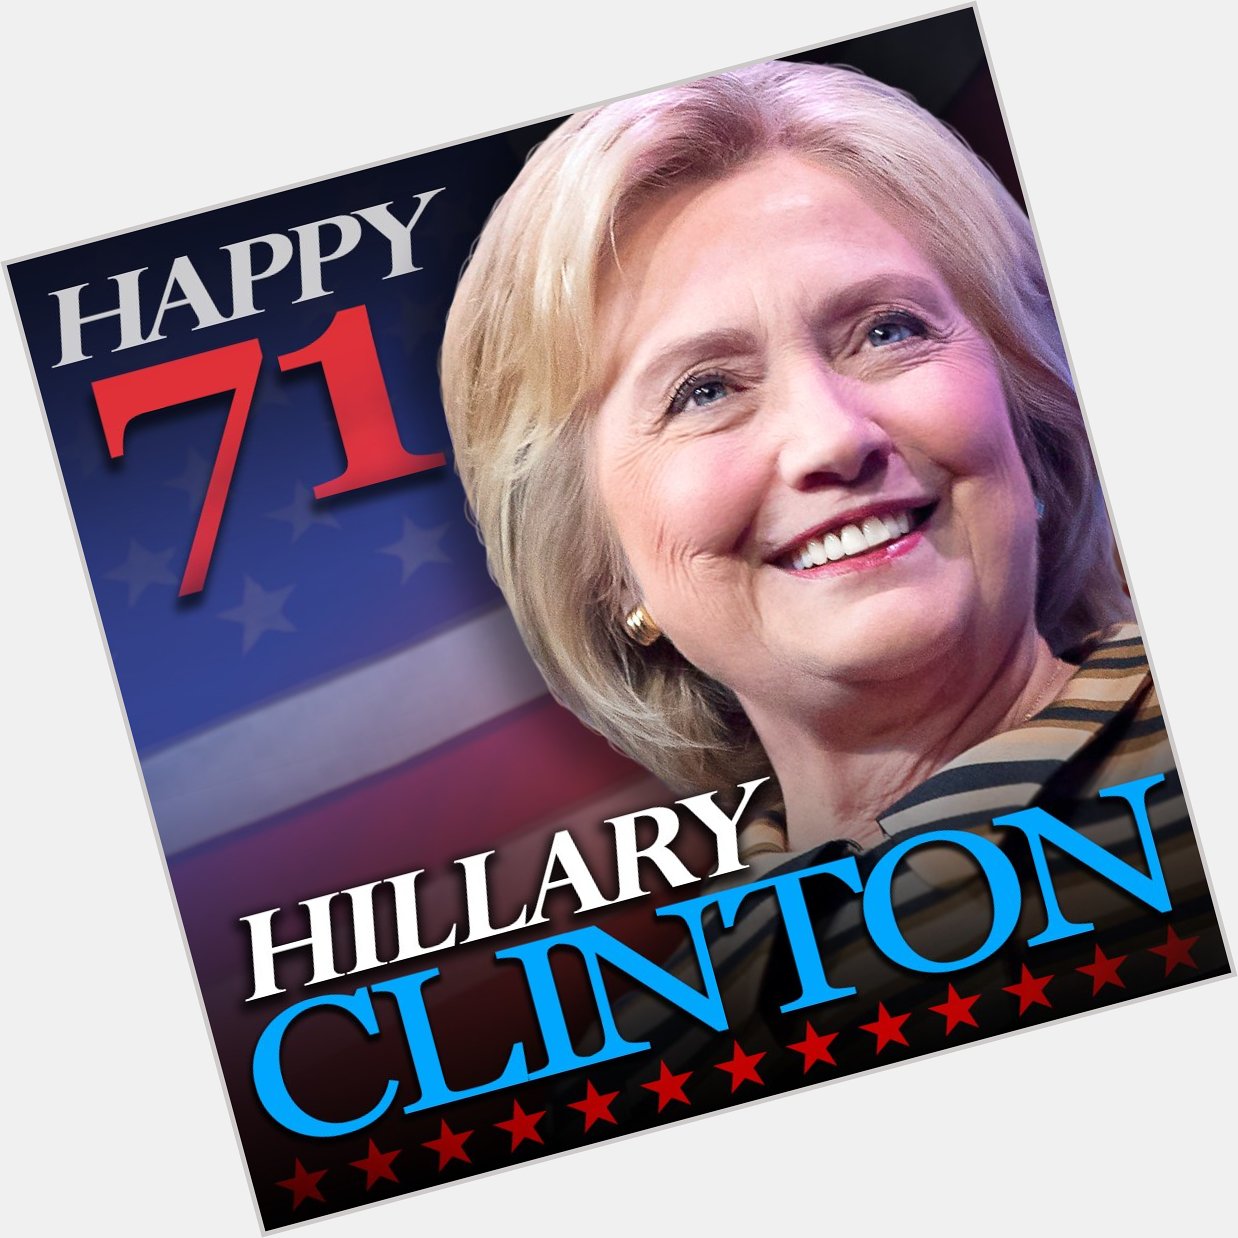 HAPPY BIRTHDAY! Hillary Clinton turns 71 today!   